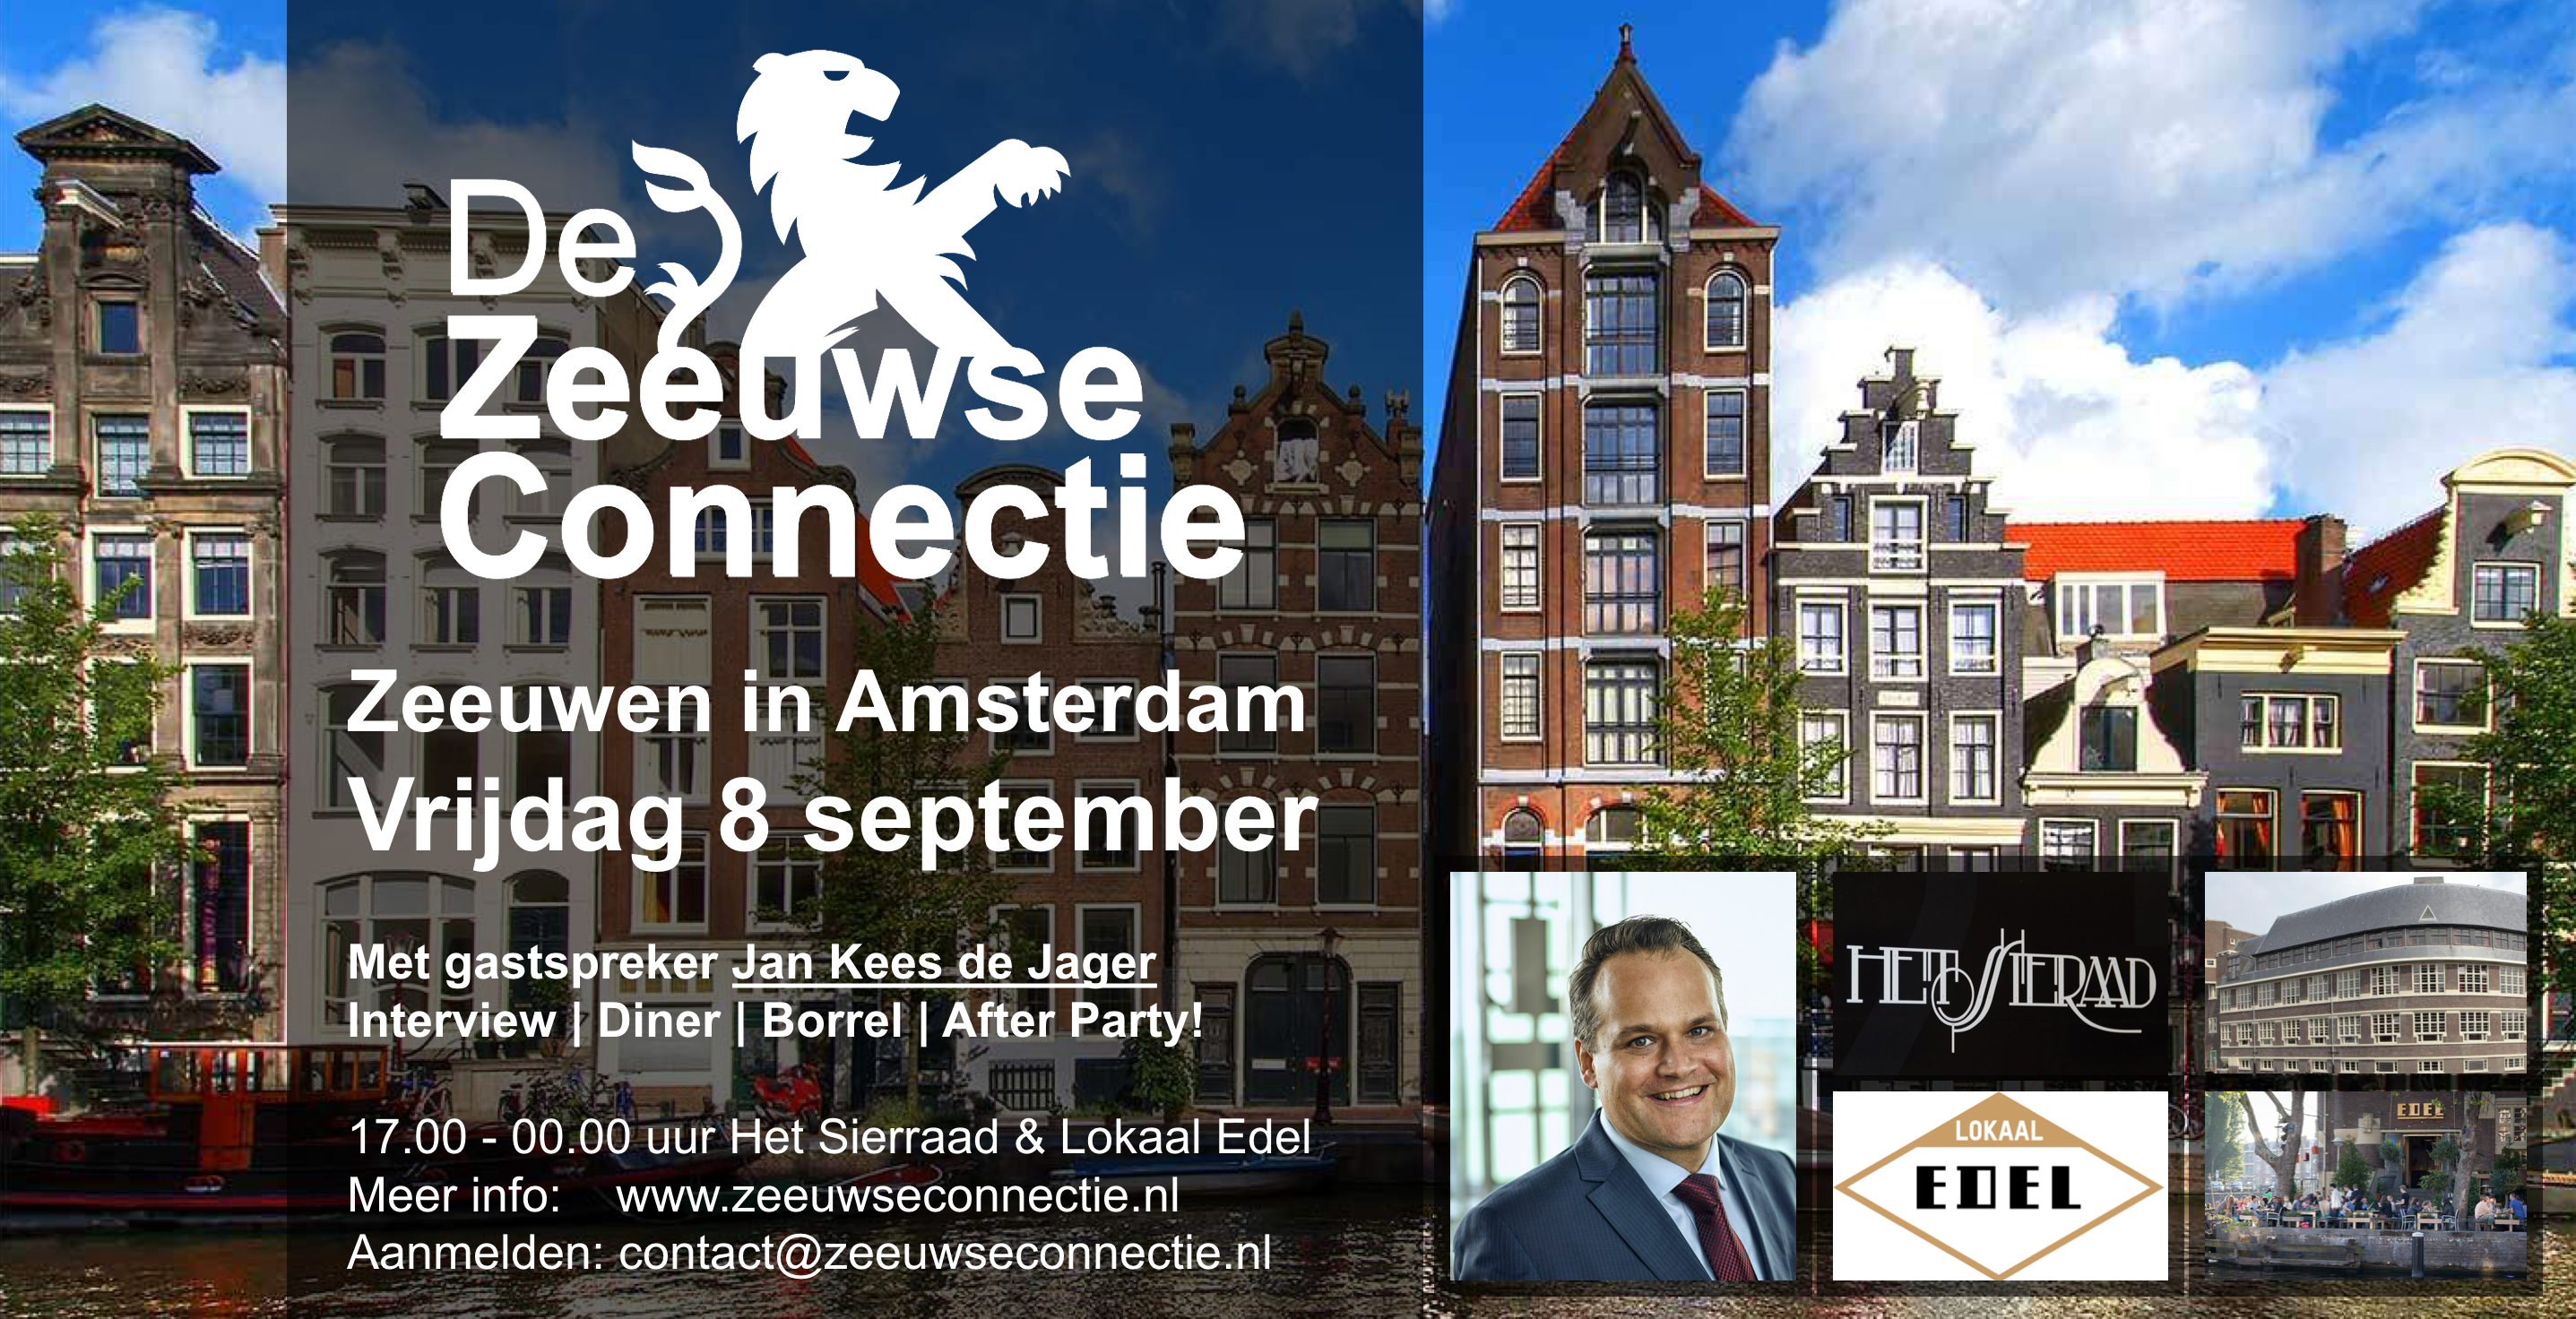 De Zeeuwse Connectie is vrijdag 8 september weer in Amsterdam